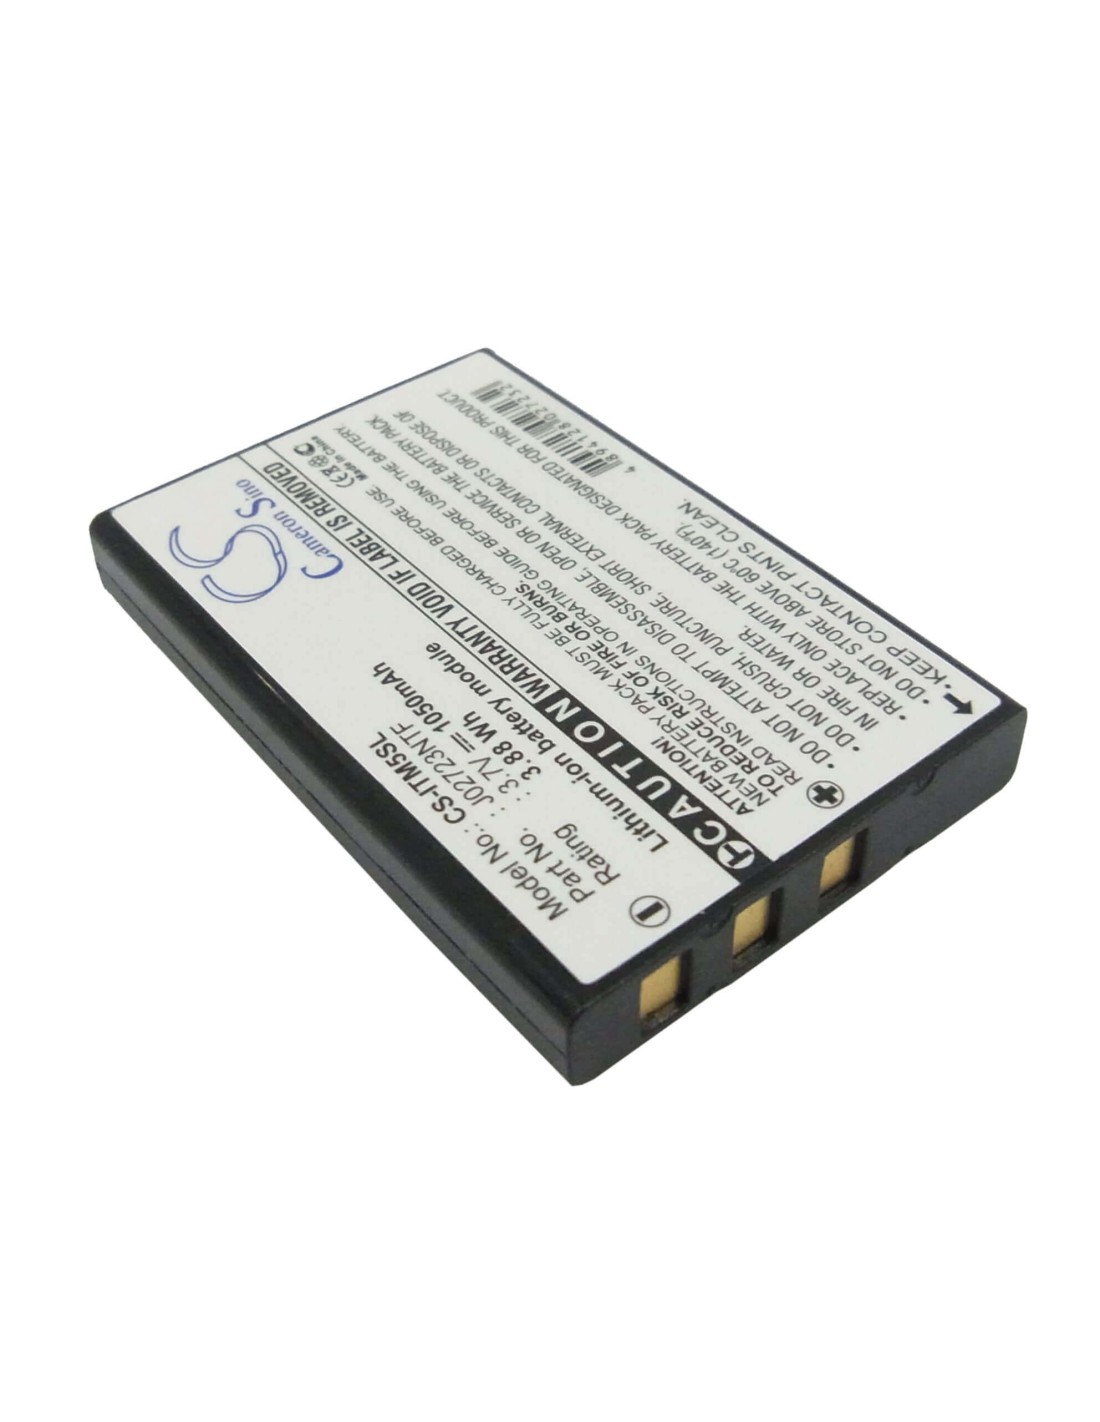 Battery for I-blue Ps3200 3.7V, 1050mAh - 3.89Wh